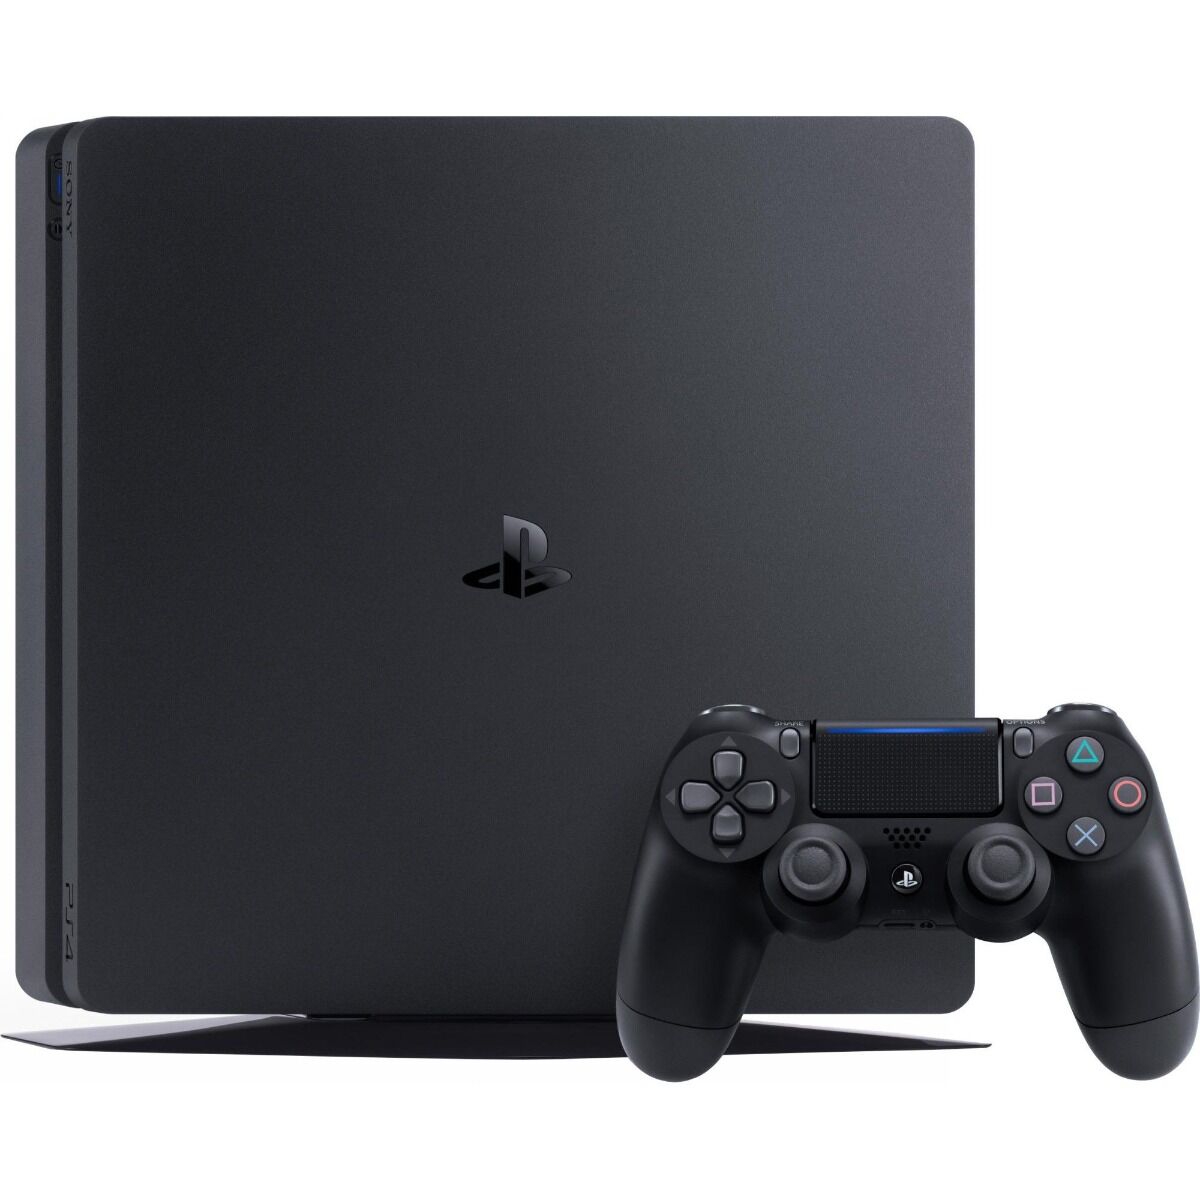 Consola PlayStation 4 Slim 500GB Black, Sony PS4